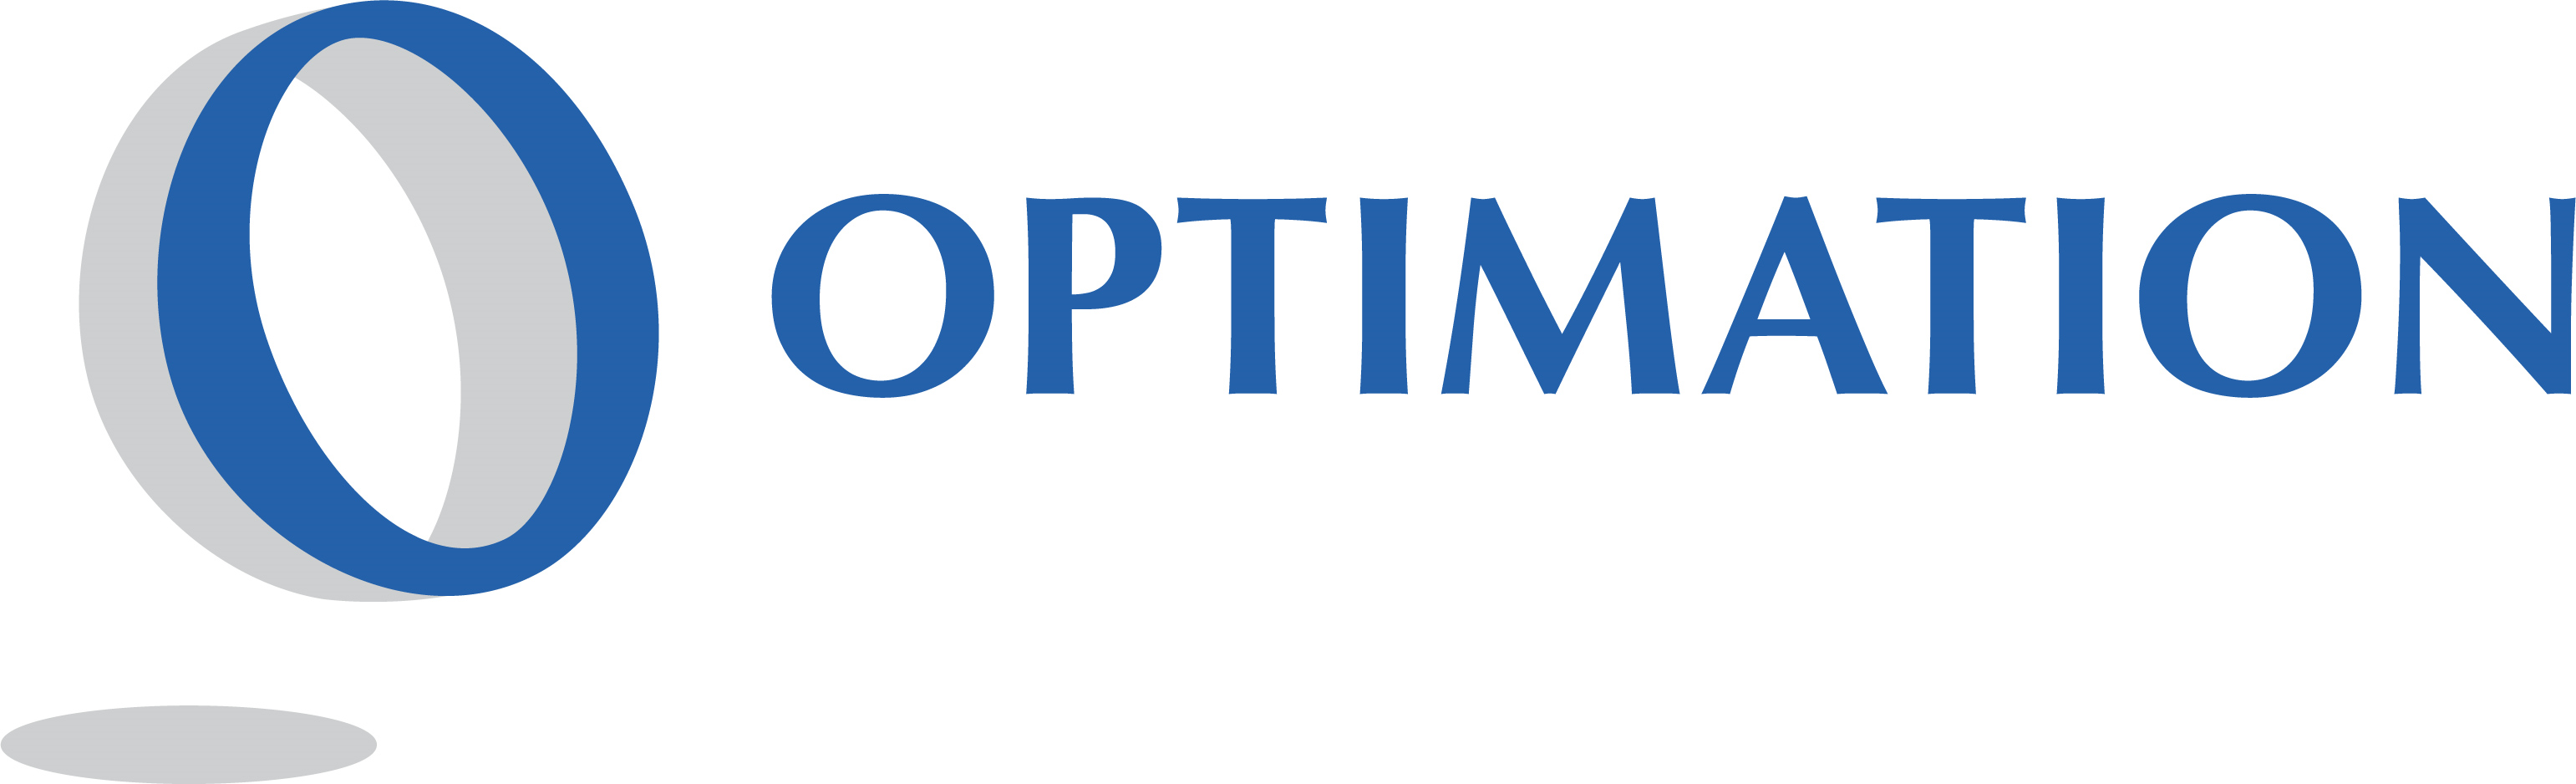 Optimation Technology, Inc. logo